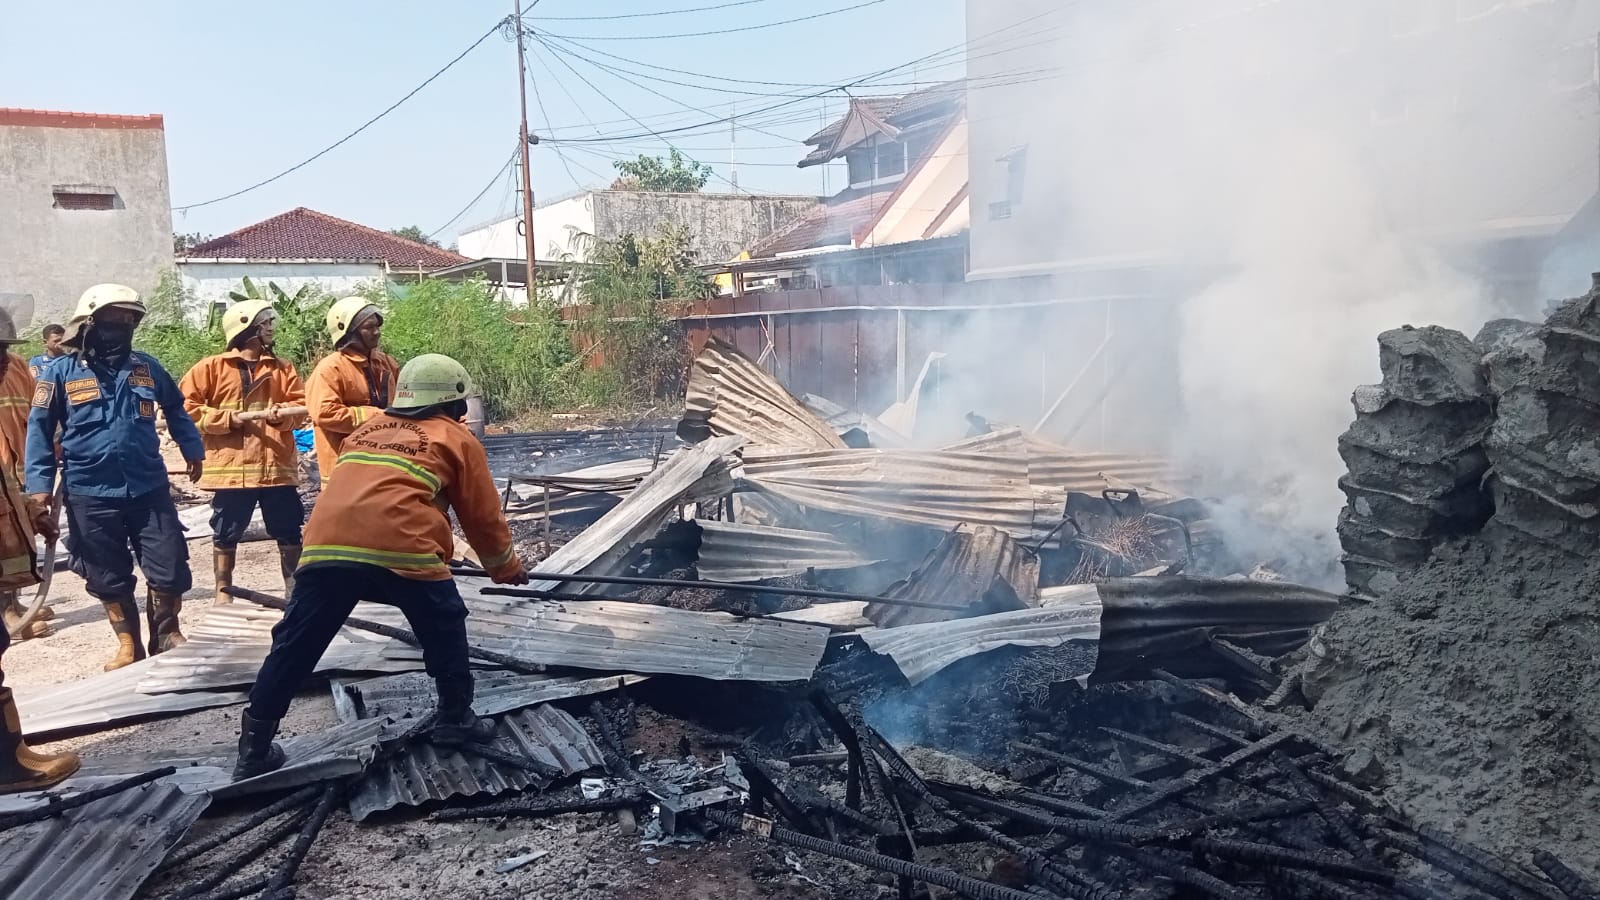 BREAKING NEWS: Terjadi Kebakaran di Lokasi Proyek Gedung di Jl Cipto Kota Cirebon